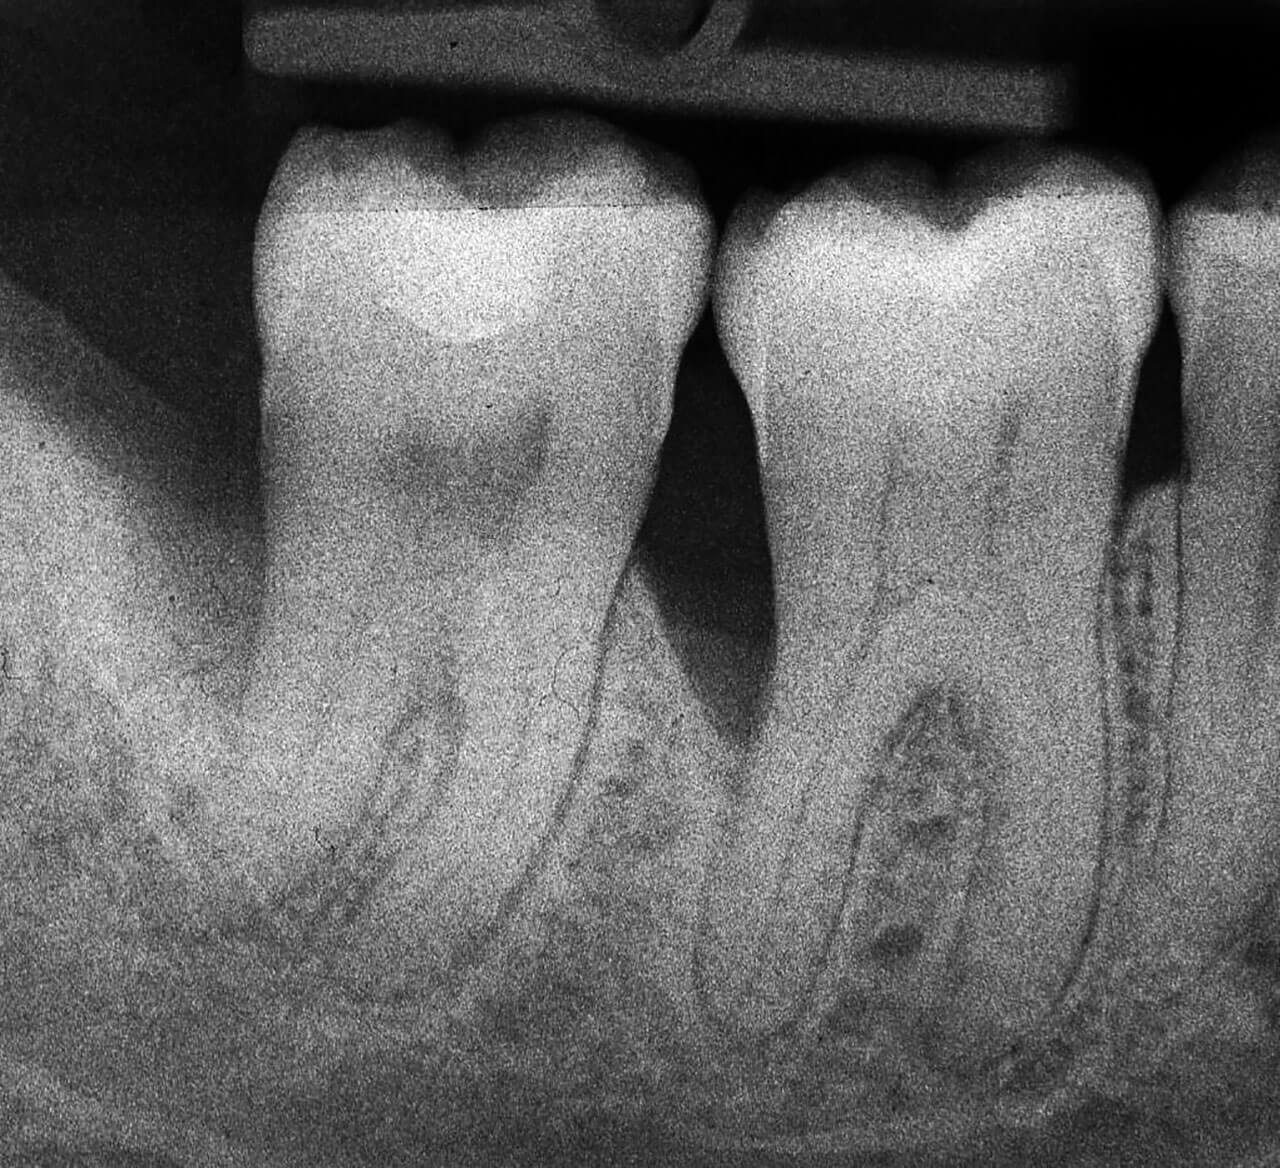 Abb. 11  Das präoperative Röntgenbild lässt zwei tiefe intraossäre Defekte distal der Zähne 46 und 47 erkennen.